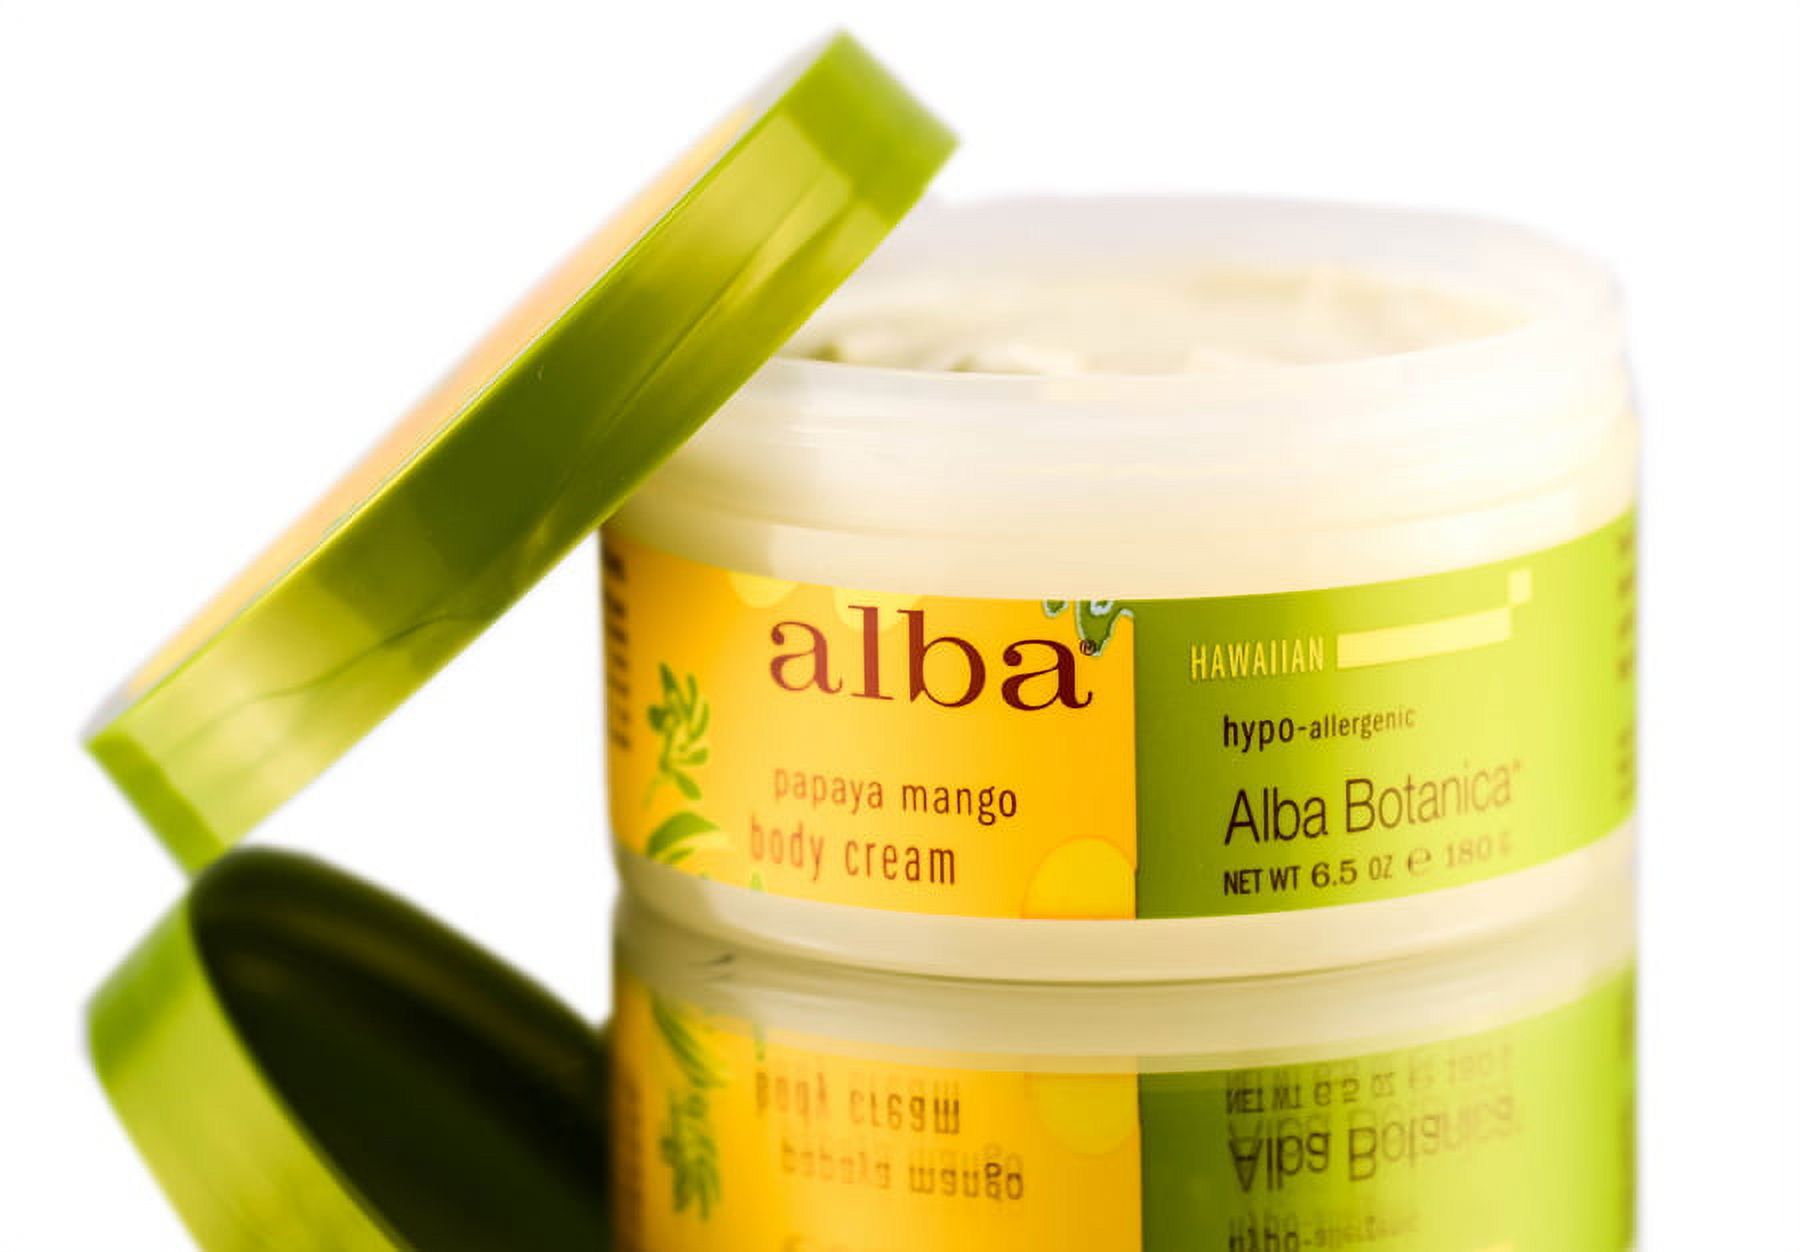 Alba Botanica Papaya Mango Body Cream (6.5 oz) - image 1 of 2